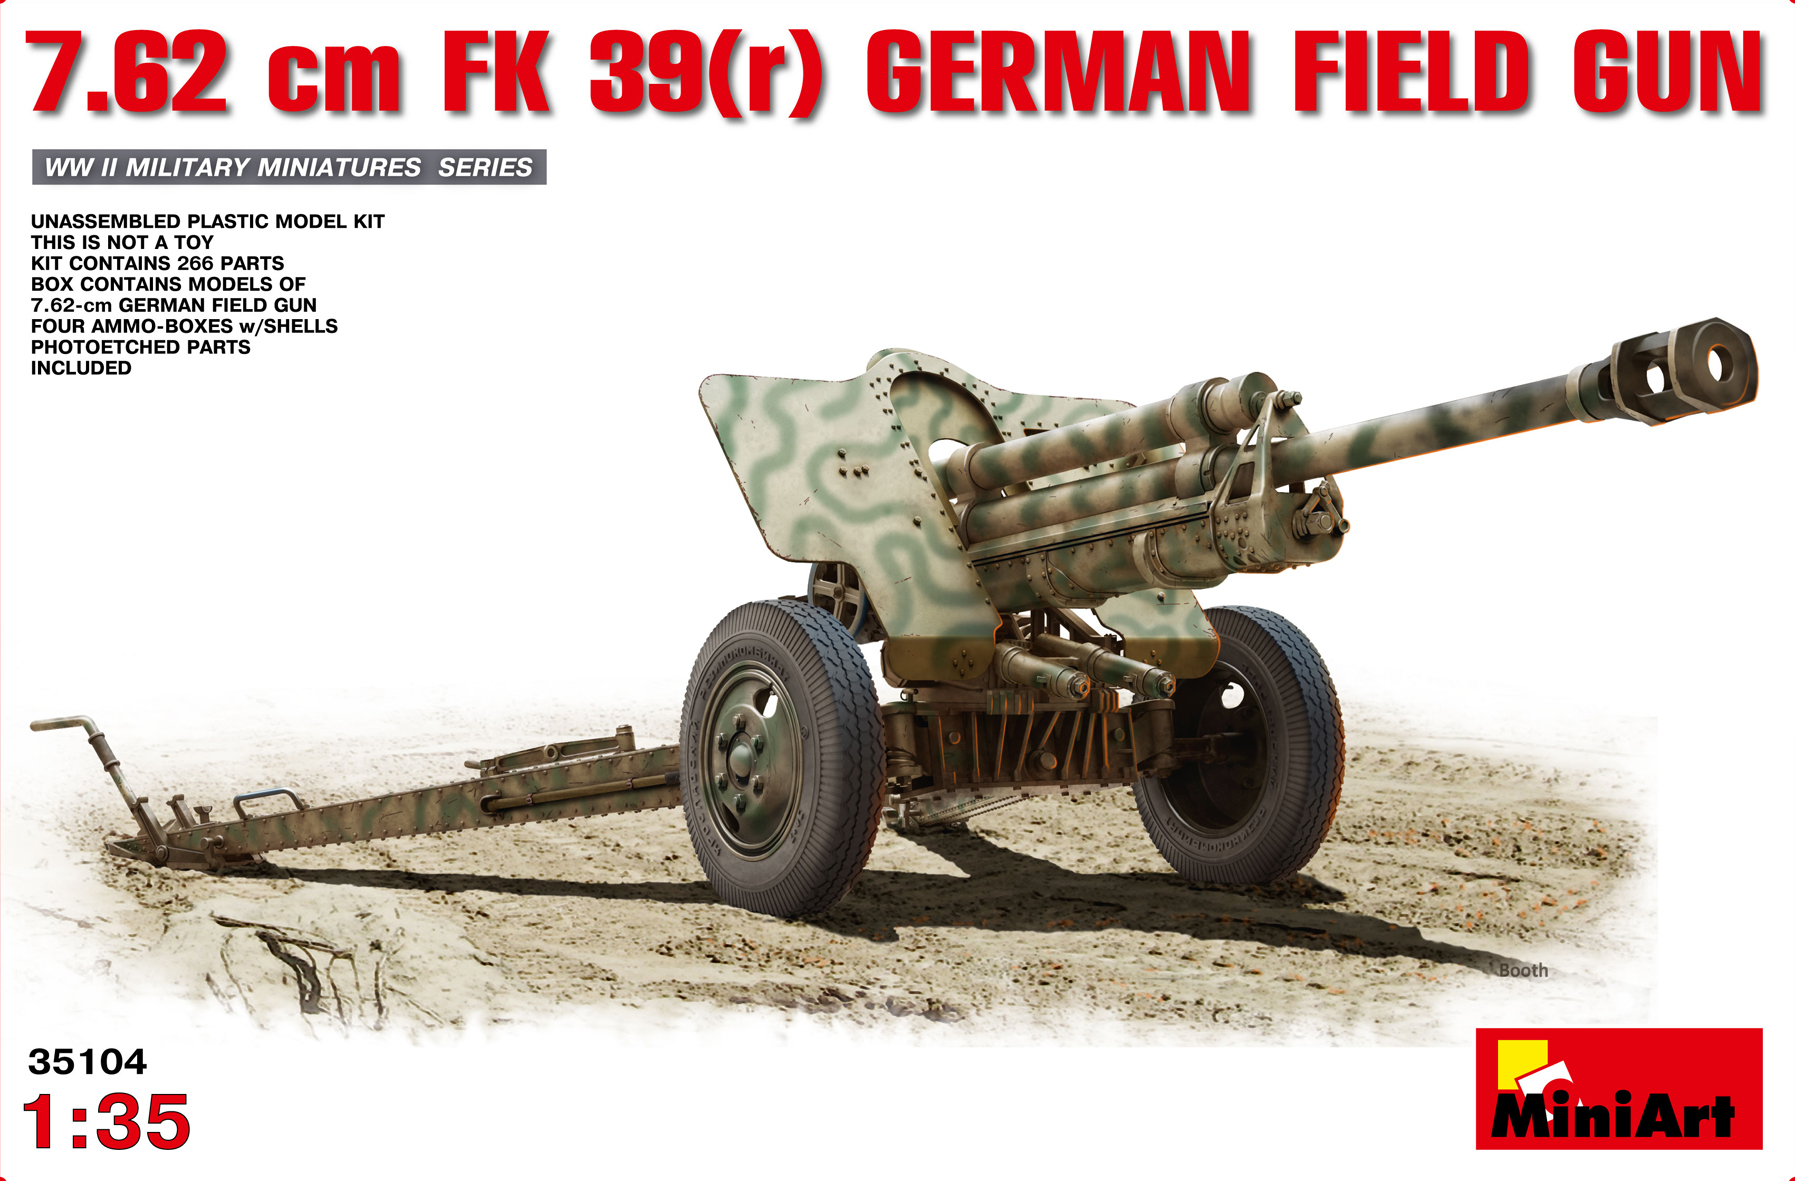 35104  техника и вооружение  7.62cm FK 39(r) GERMAN FIELD GUN  (1:35)